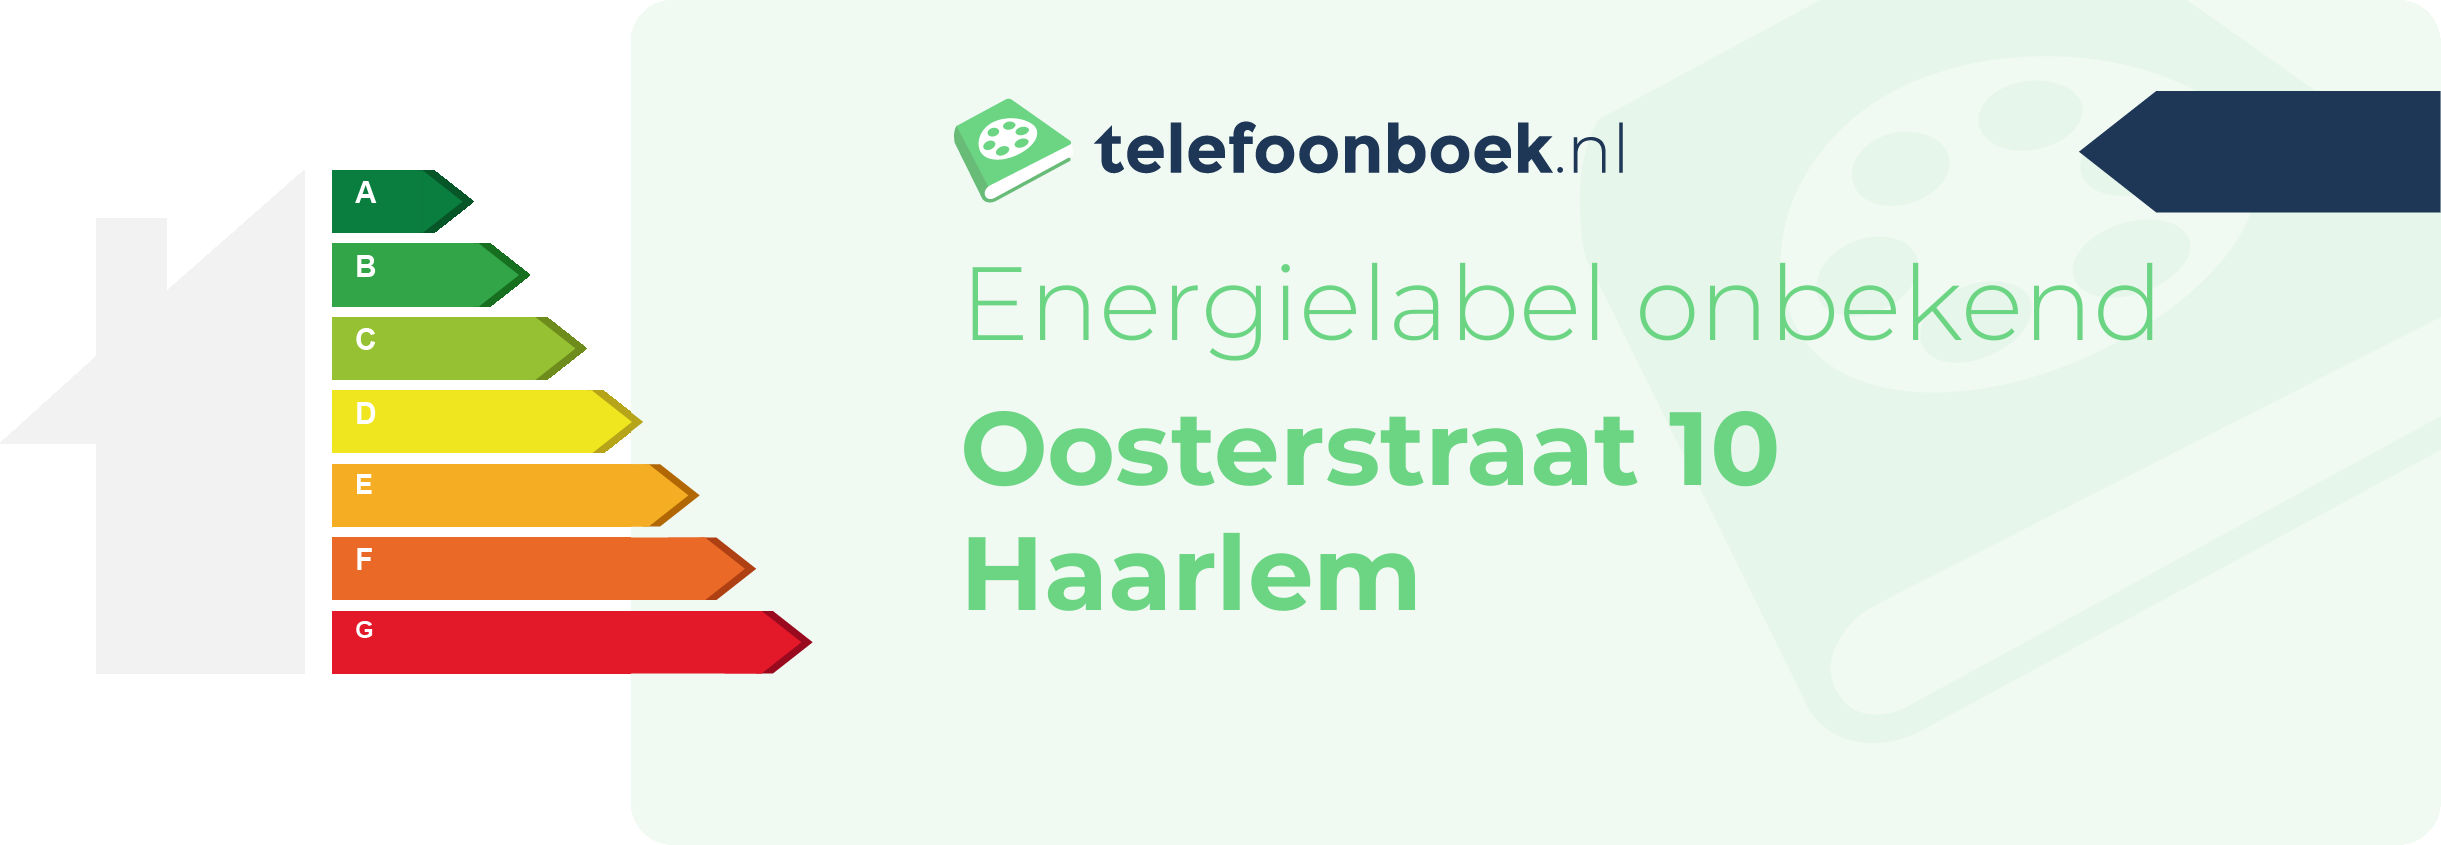 Energielabel Oosterstraat 10 Haarlem